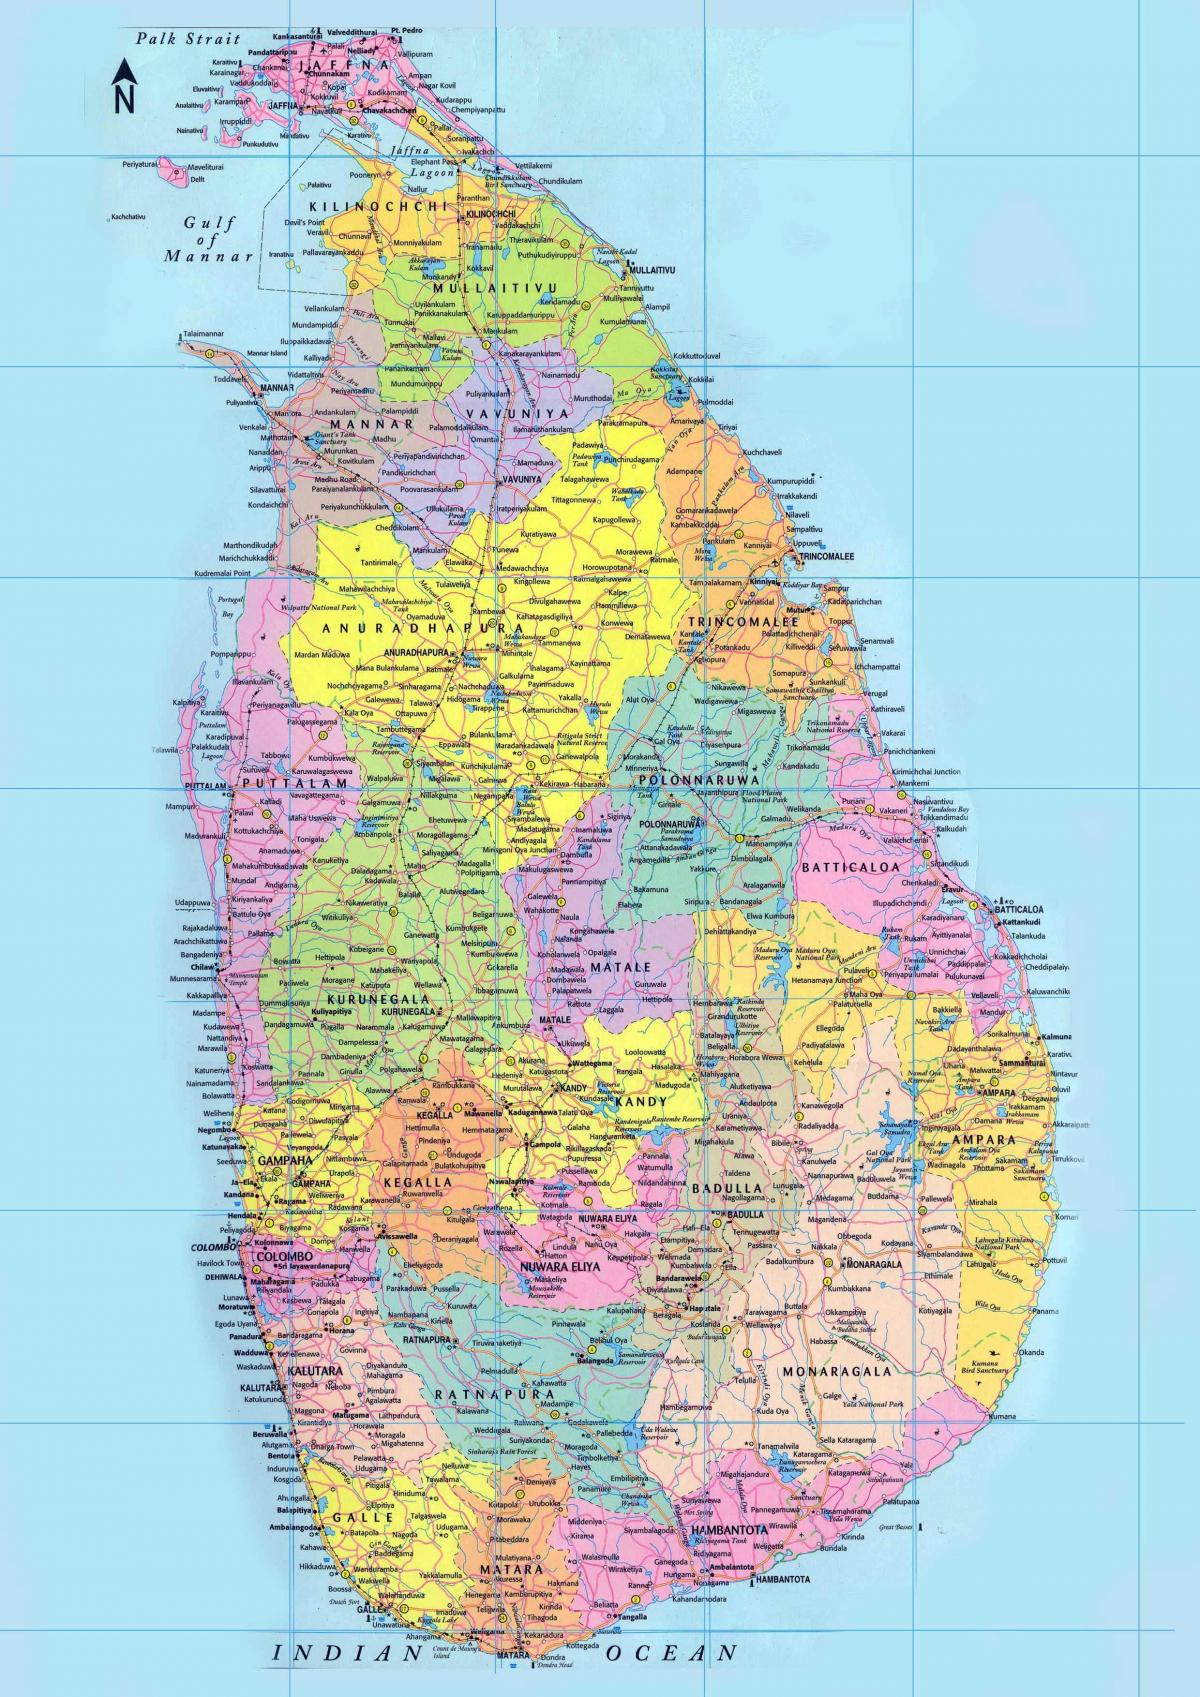 के विस्तृत नक्शे के साथ श्रीलंका के सड़कों